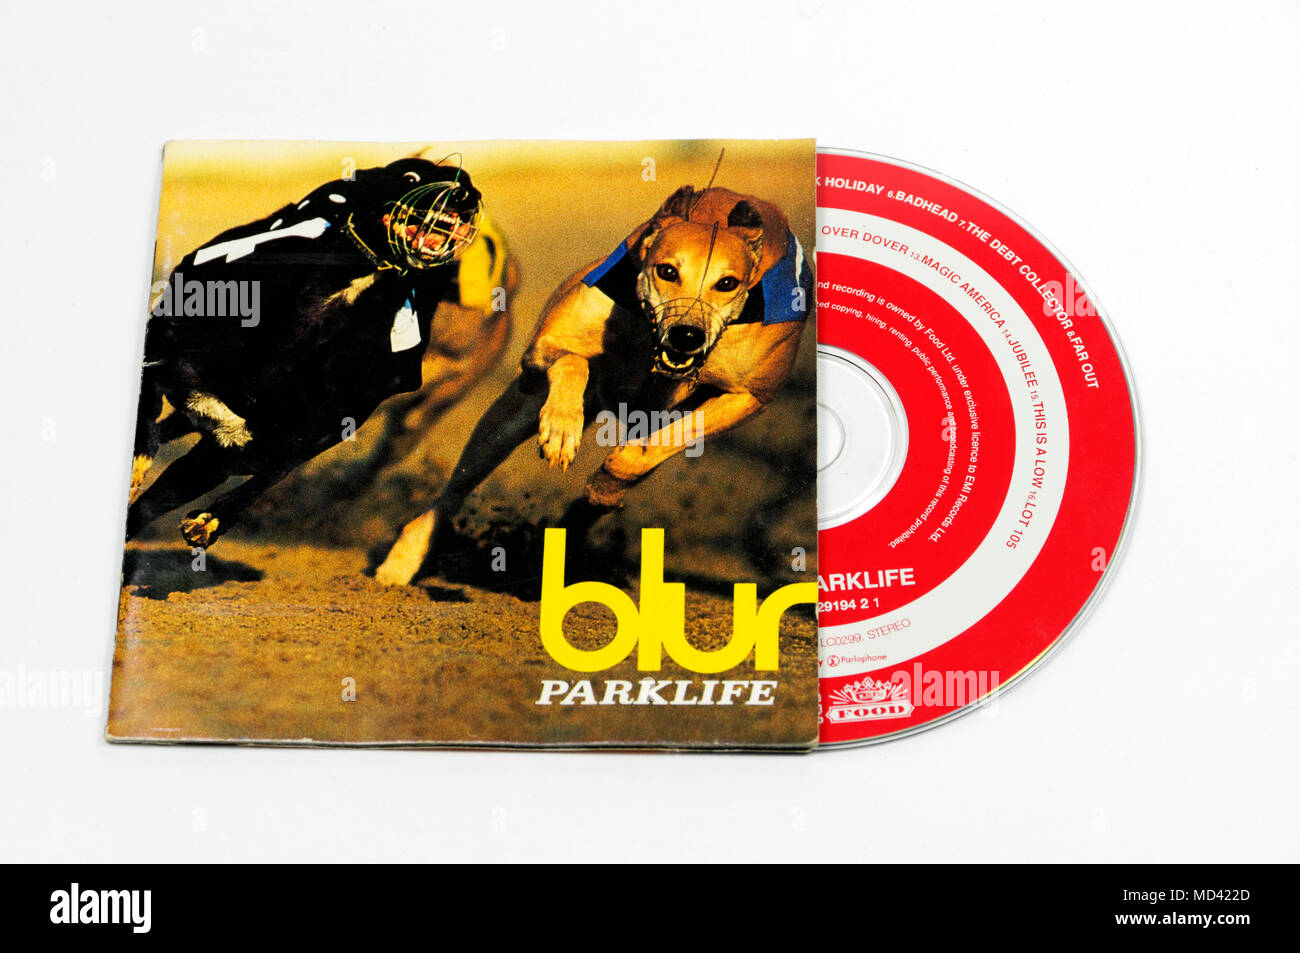 Pochette cd Banque de photographies et d'images à haute résolution - Alamy